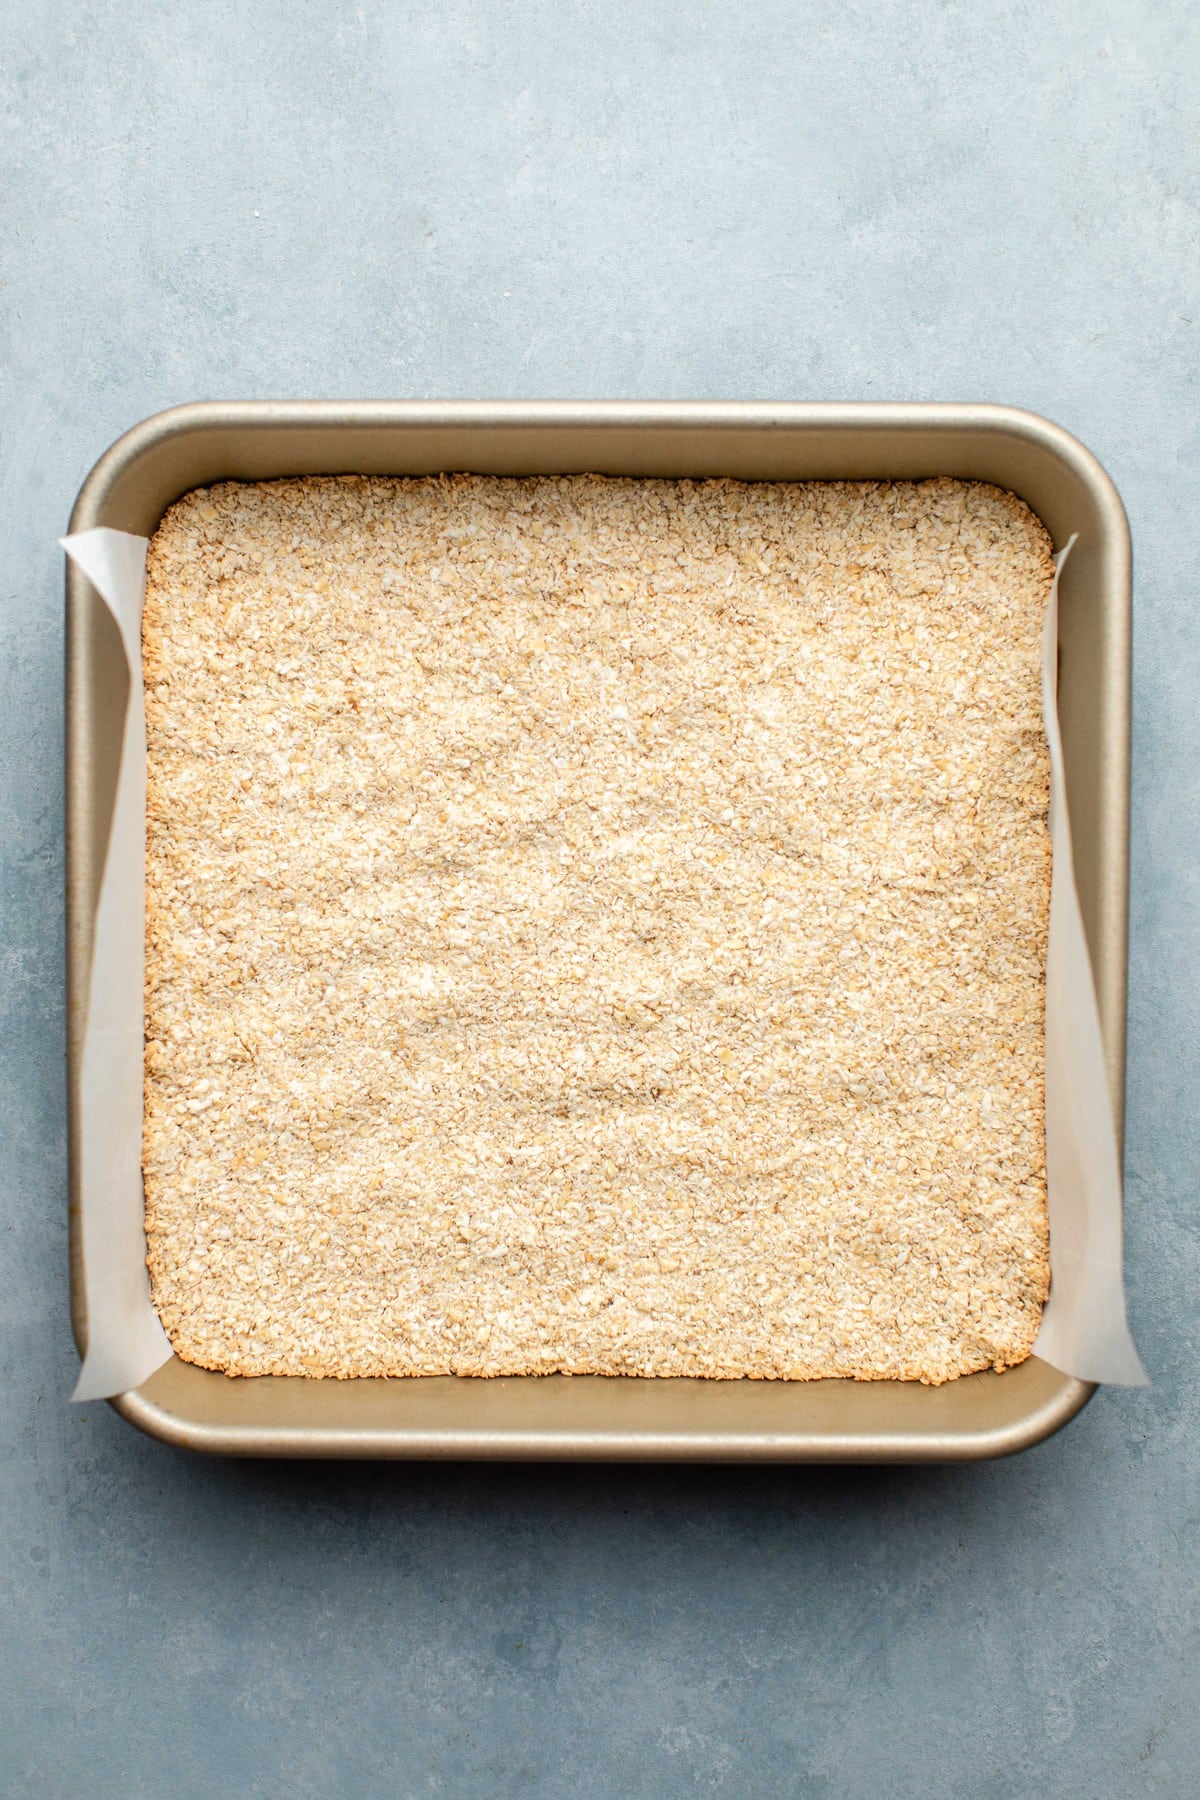 baked graham cracker base for smores bars